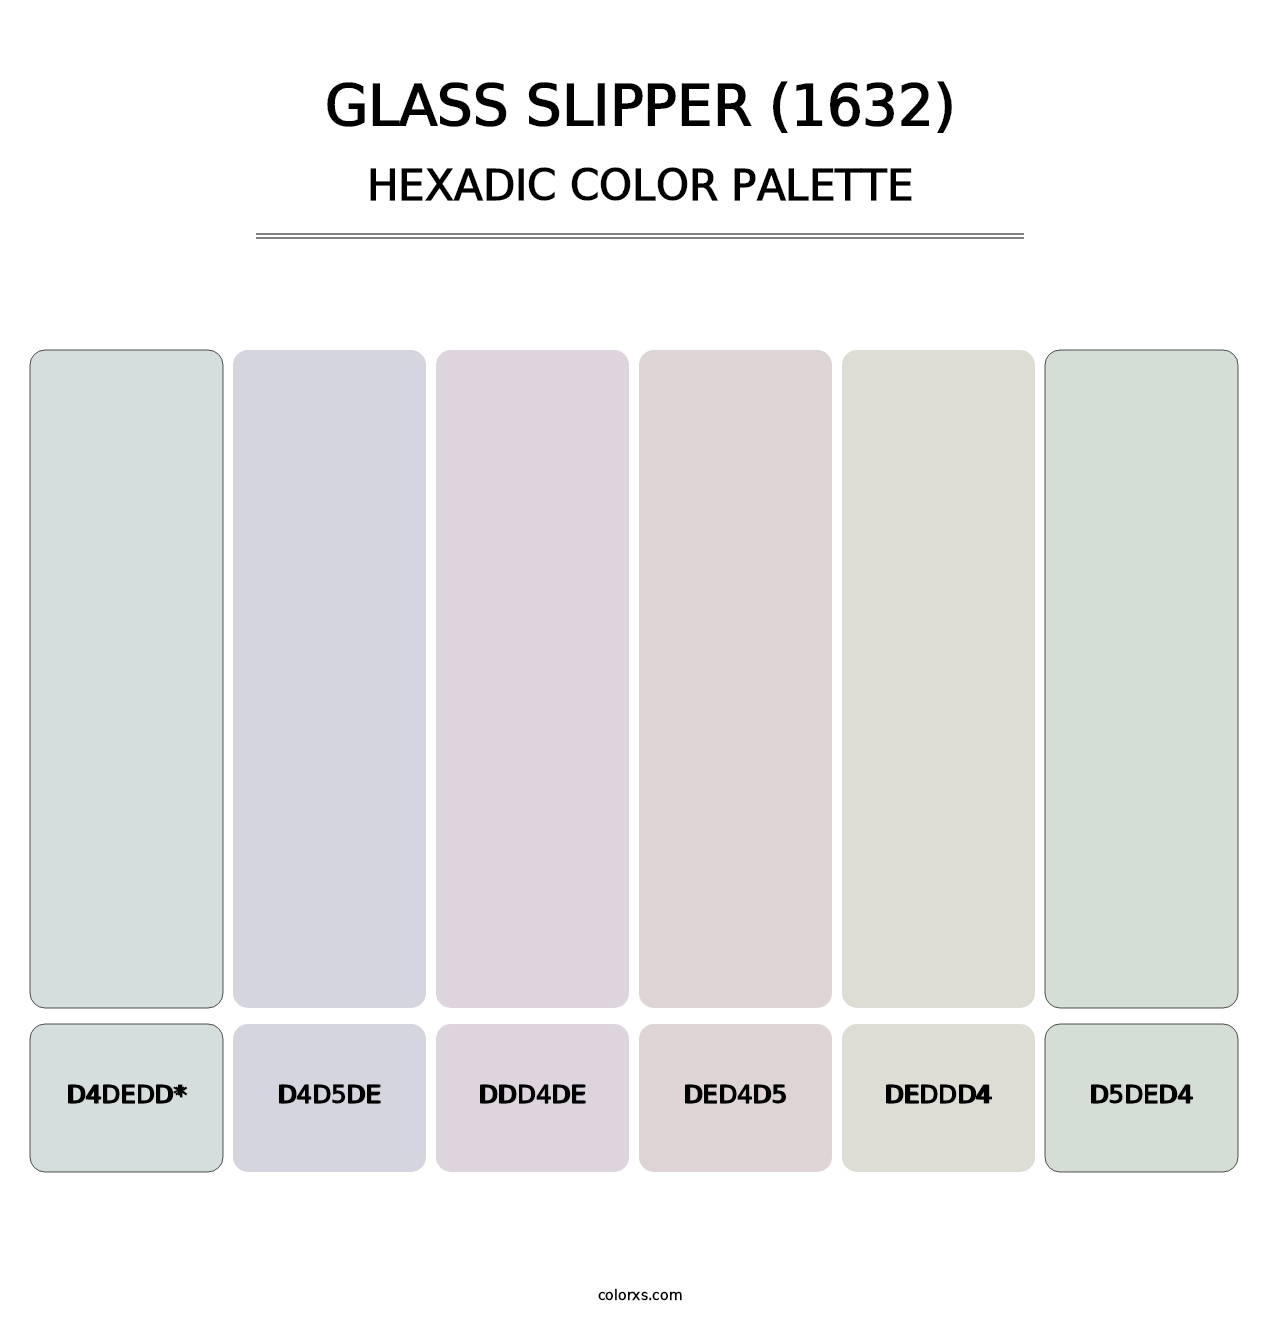 Glass Slipper (1632) - Hexadic Color Palette